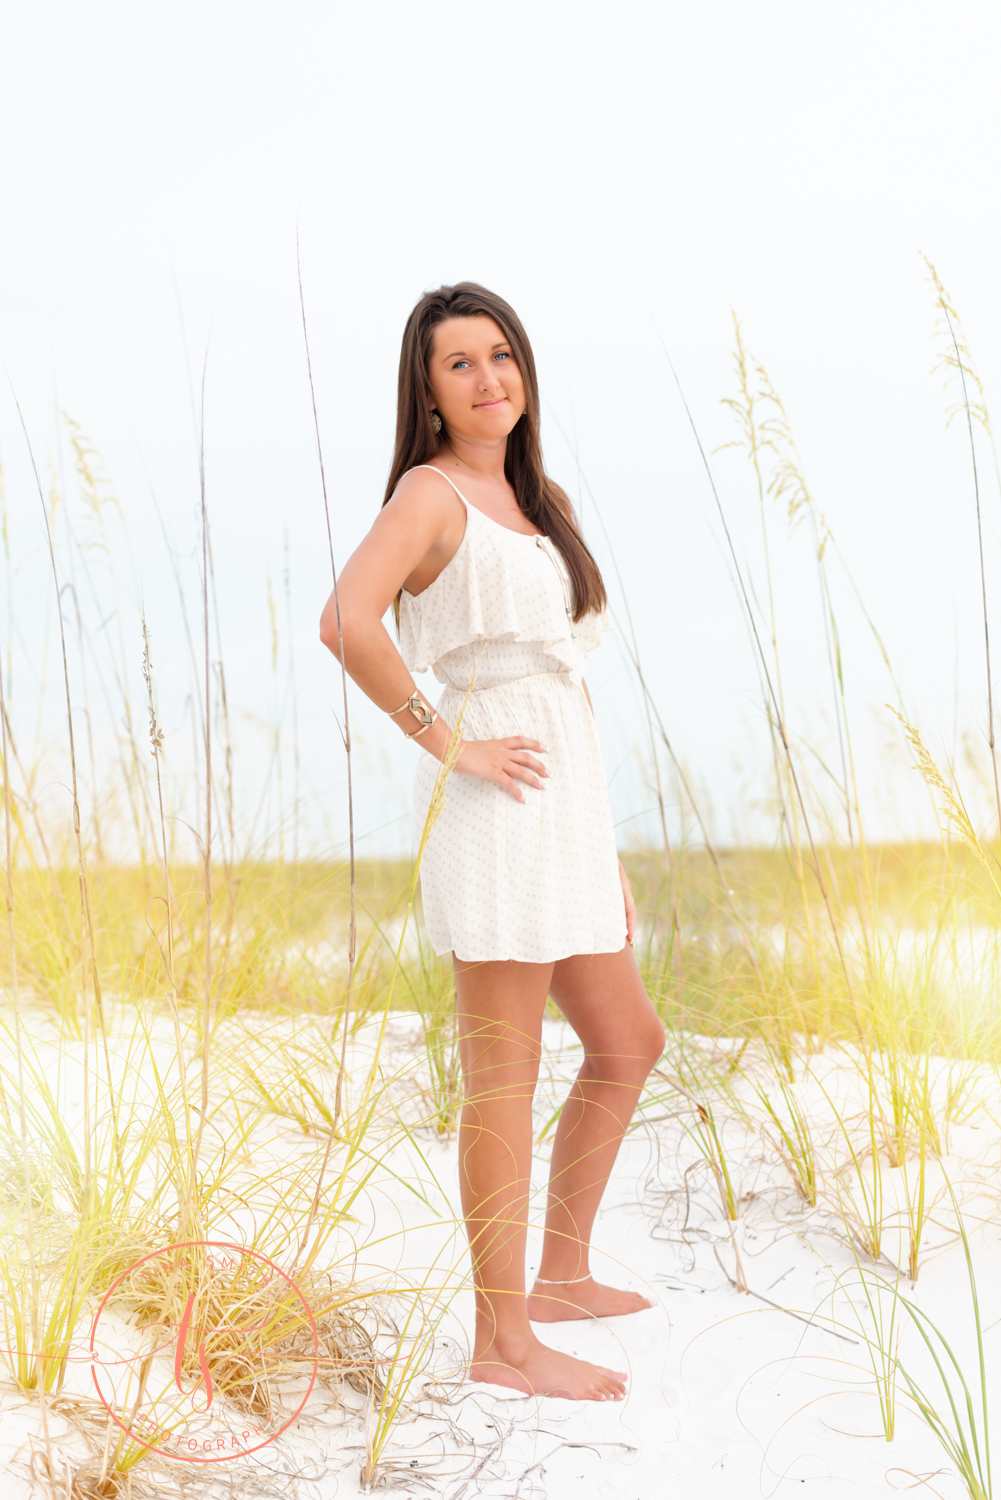 destin senior girl in white dress on beach for photography